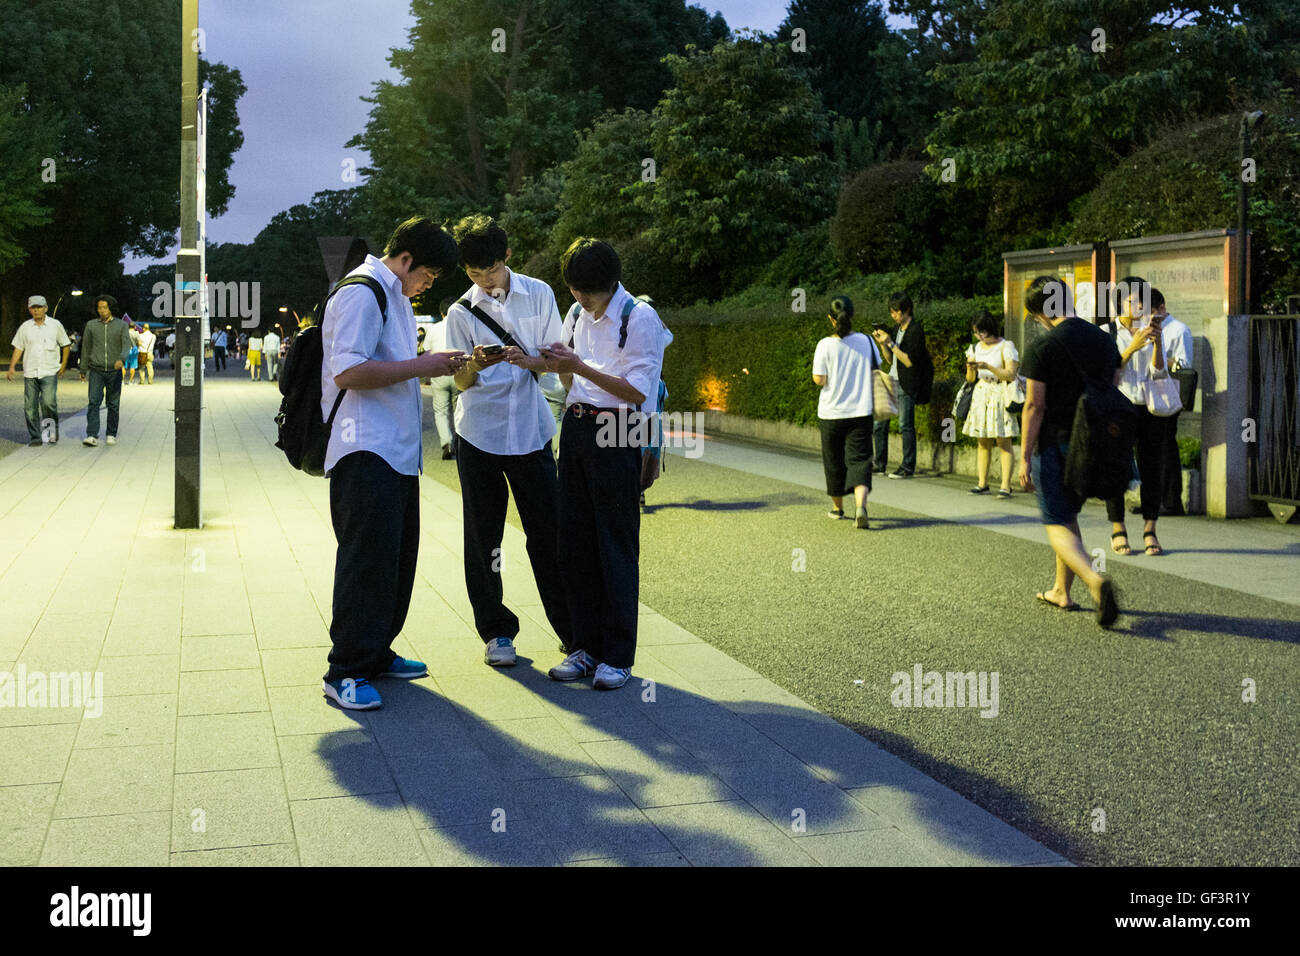 Menschen spielen Pokemon gehen auf ihren Smartphones im Ueno Park in Tokio, Japan Stockfoto